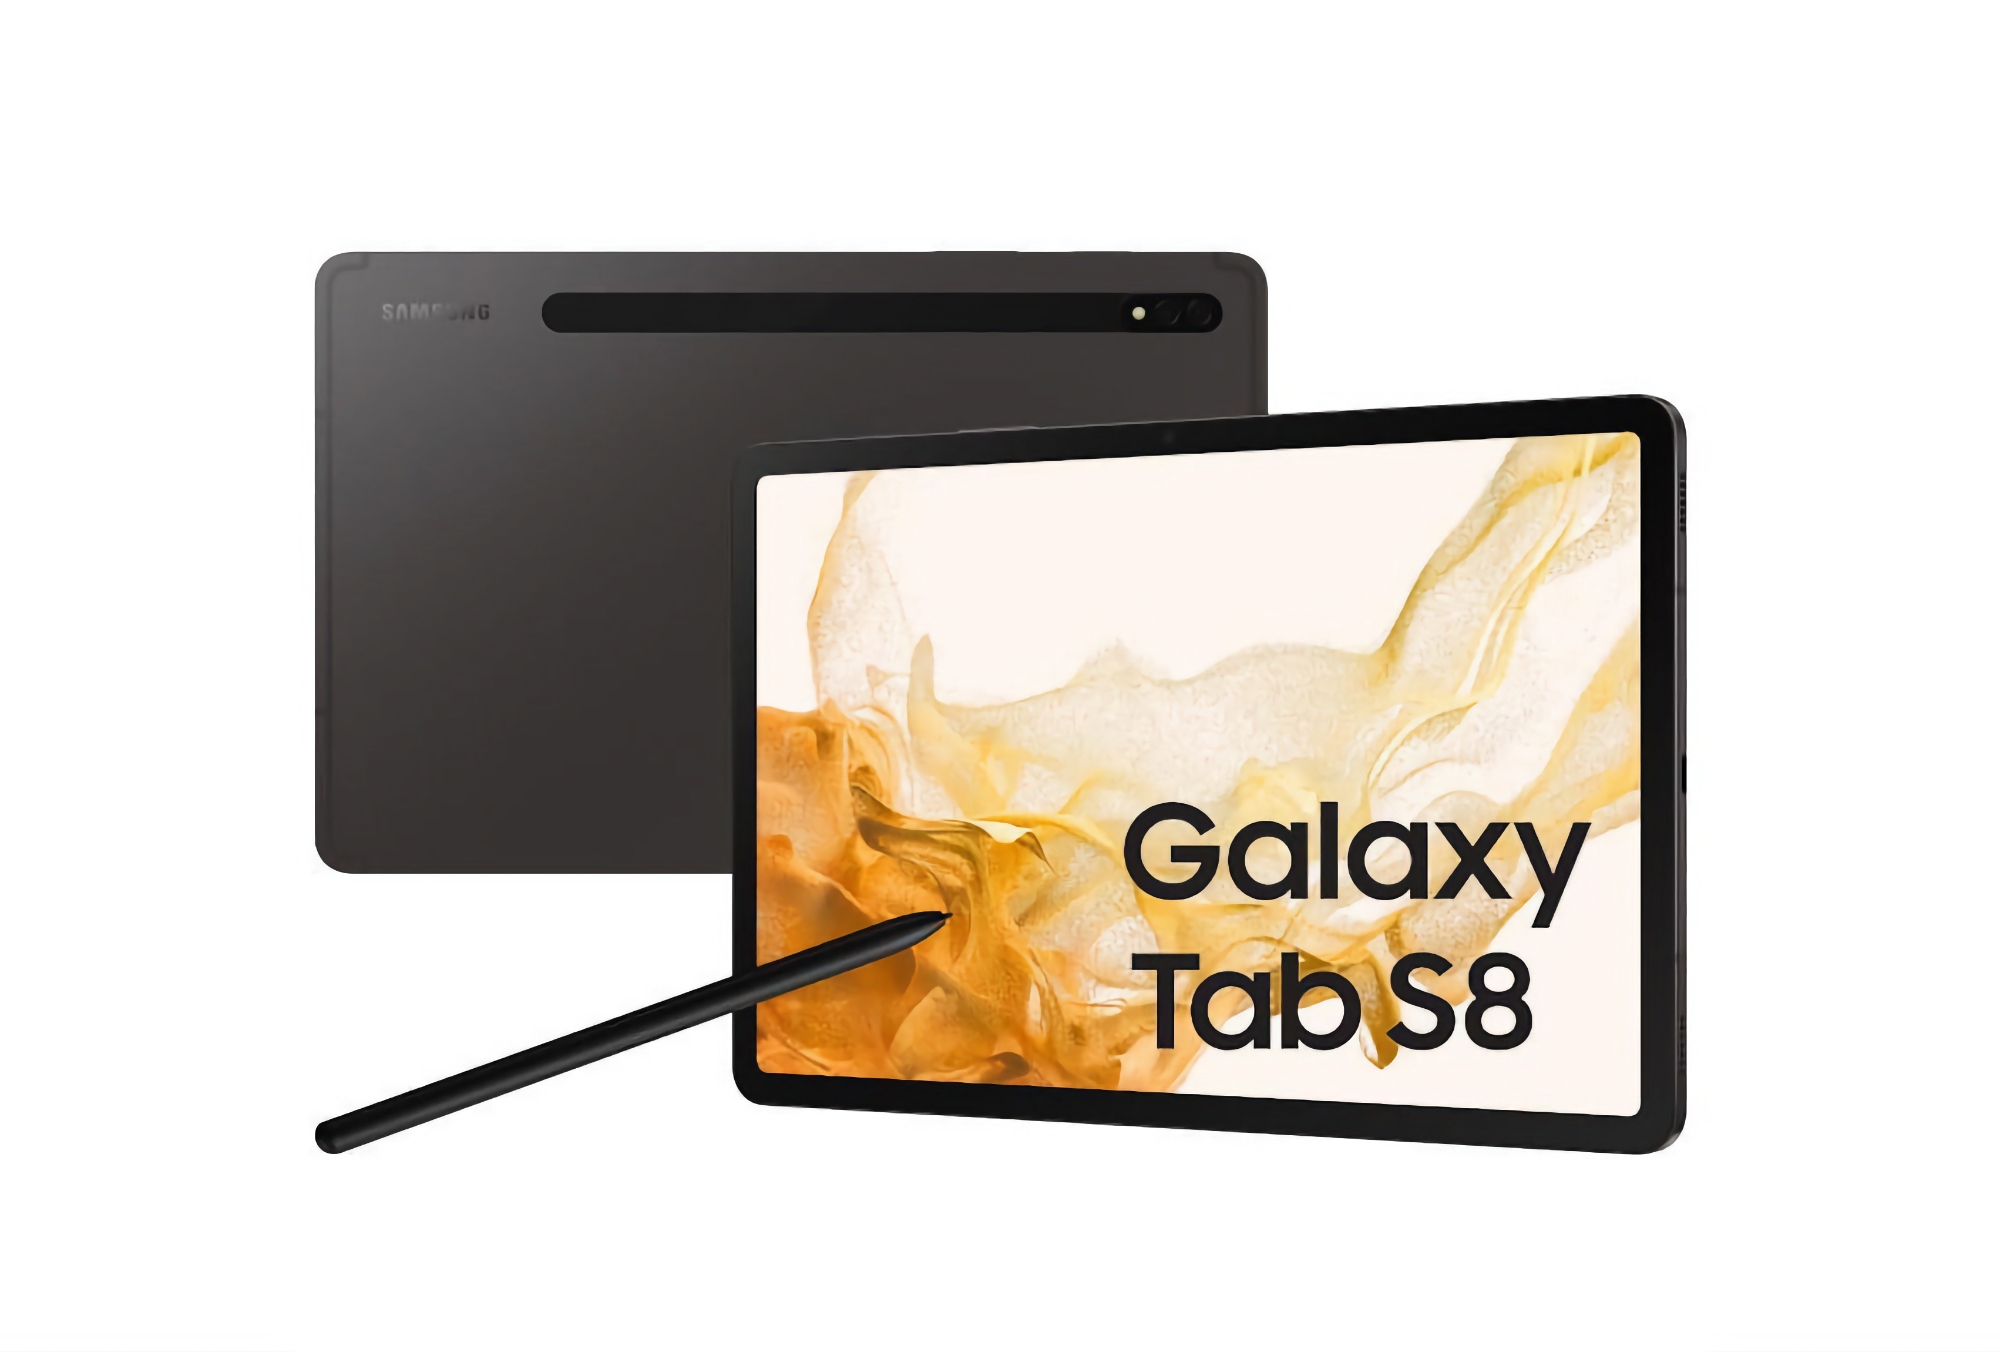 Opptil $200 i rabatt: Samsung Galaxy Tab S8 med 11-tommers skjerm og Snapdragon 8 Gen 1-brikke er tilgjengelig på Amazon til kampanjepris.